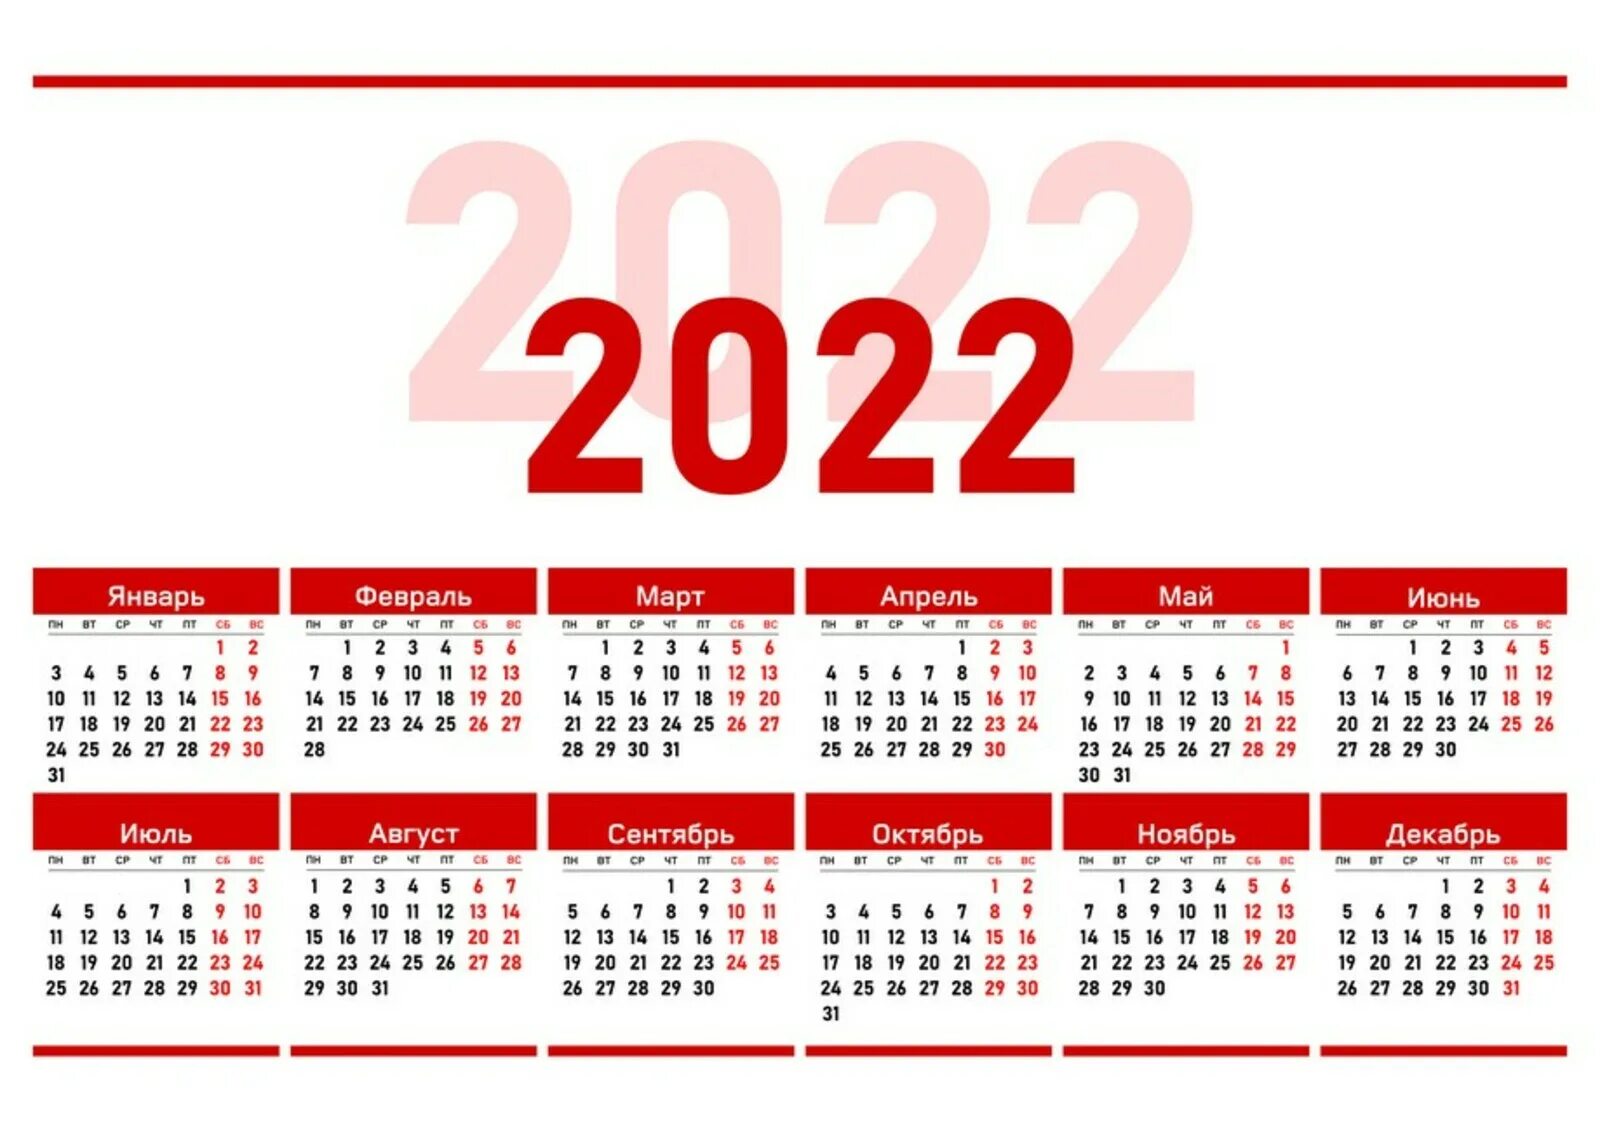 Календарь на 2022 год ЛНР. Официальные праздники 2022 года в России. Выходные дни в 2022 году в России. Рабочий календарь на 2022. Сколько прошло месяцев с 2022